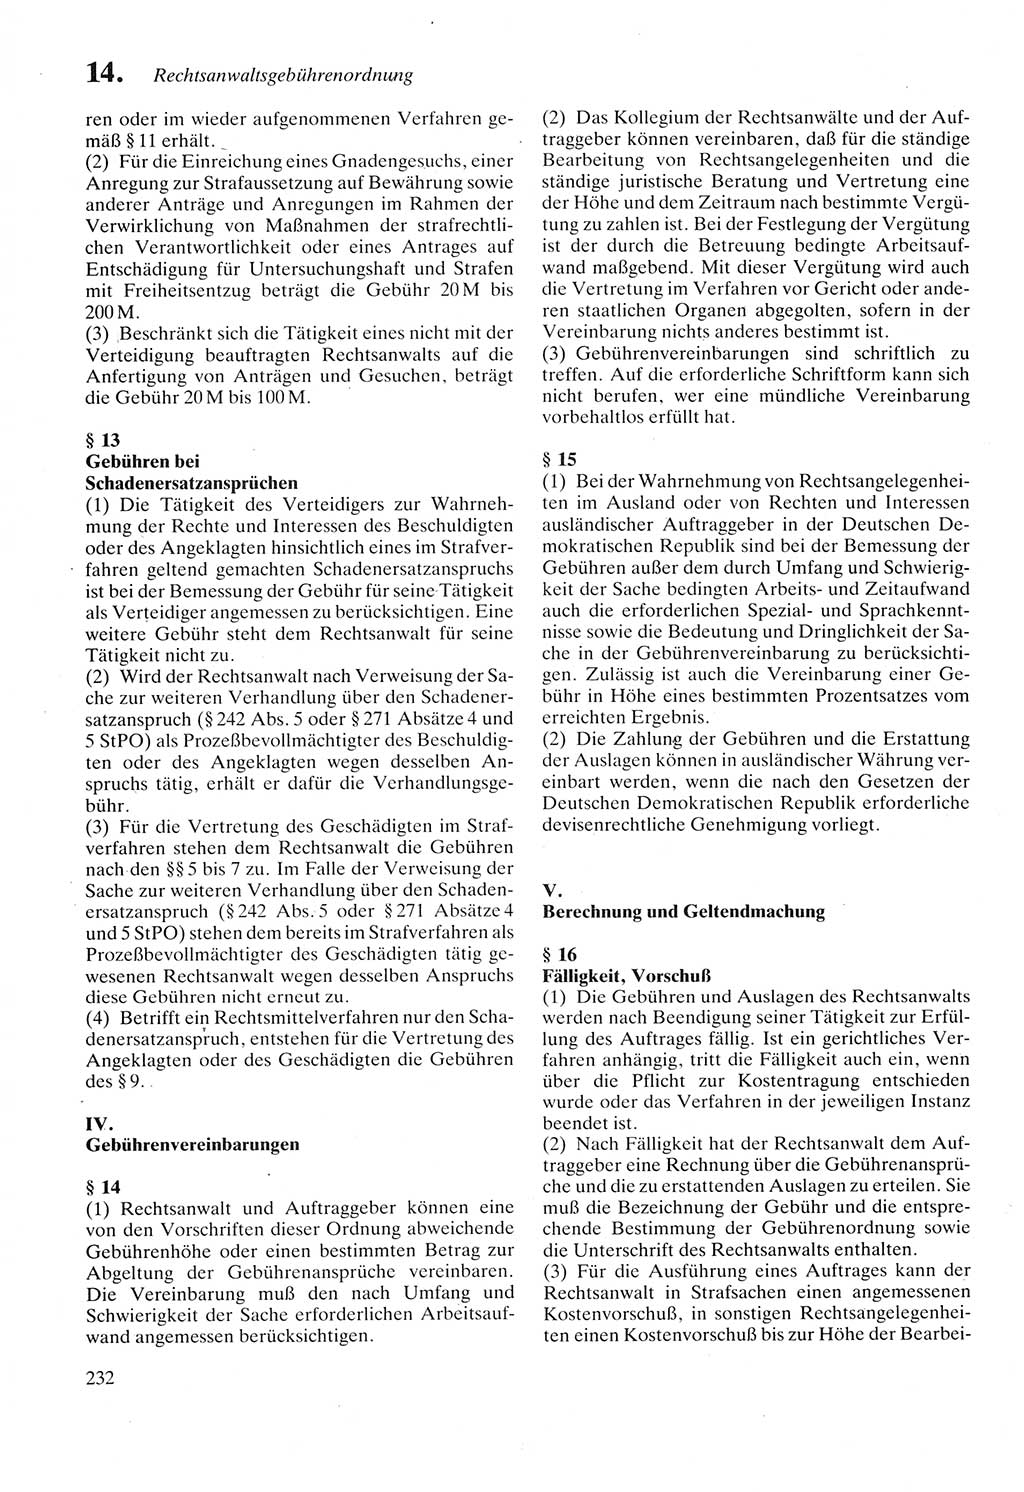 Strafprozeßordnung (StPO) der Deutschen Demokratischen Republik (DDR) sowie angrenzende Gesetze und Bestimmungen 1987, Seite 232 (StPO DDR Ges. Best. 1987, S. 232)